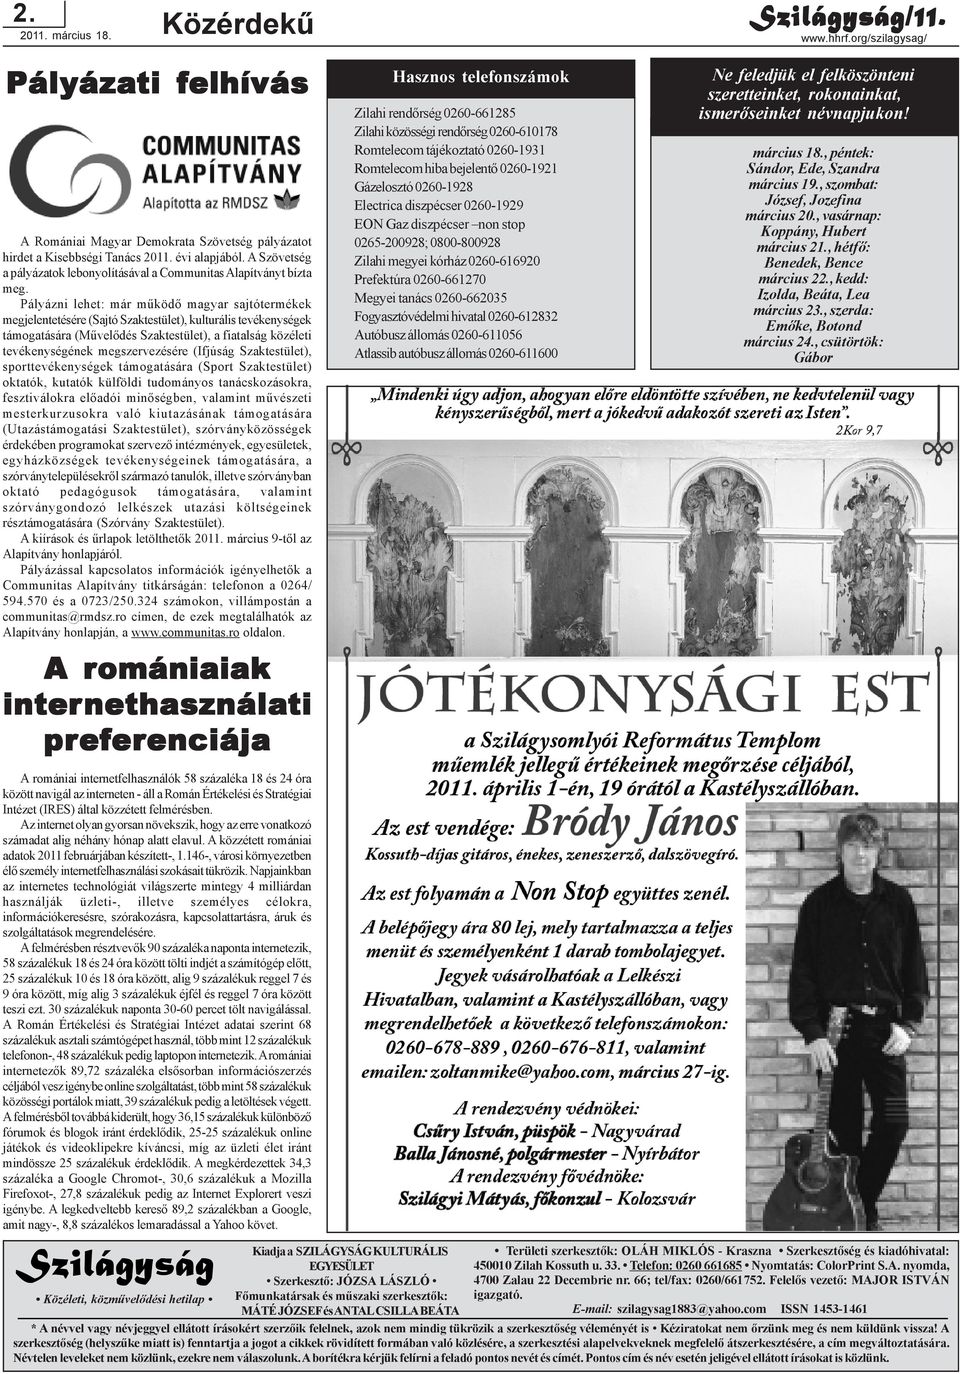 Pályázni lehet: már mûködõ magyar sajtótermékek megjelentetésére (Sajtó Szaktestület), kulturális tevékenységek támogatására (Mûvelõdés Szaktestület), a fiatalság közéleti tevékenységének